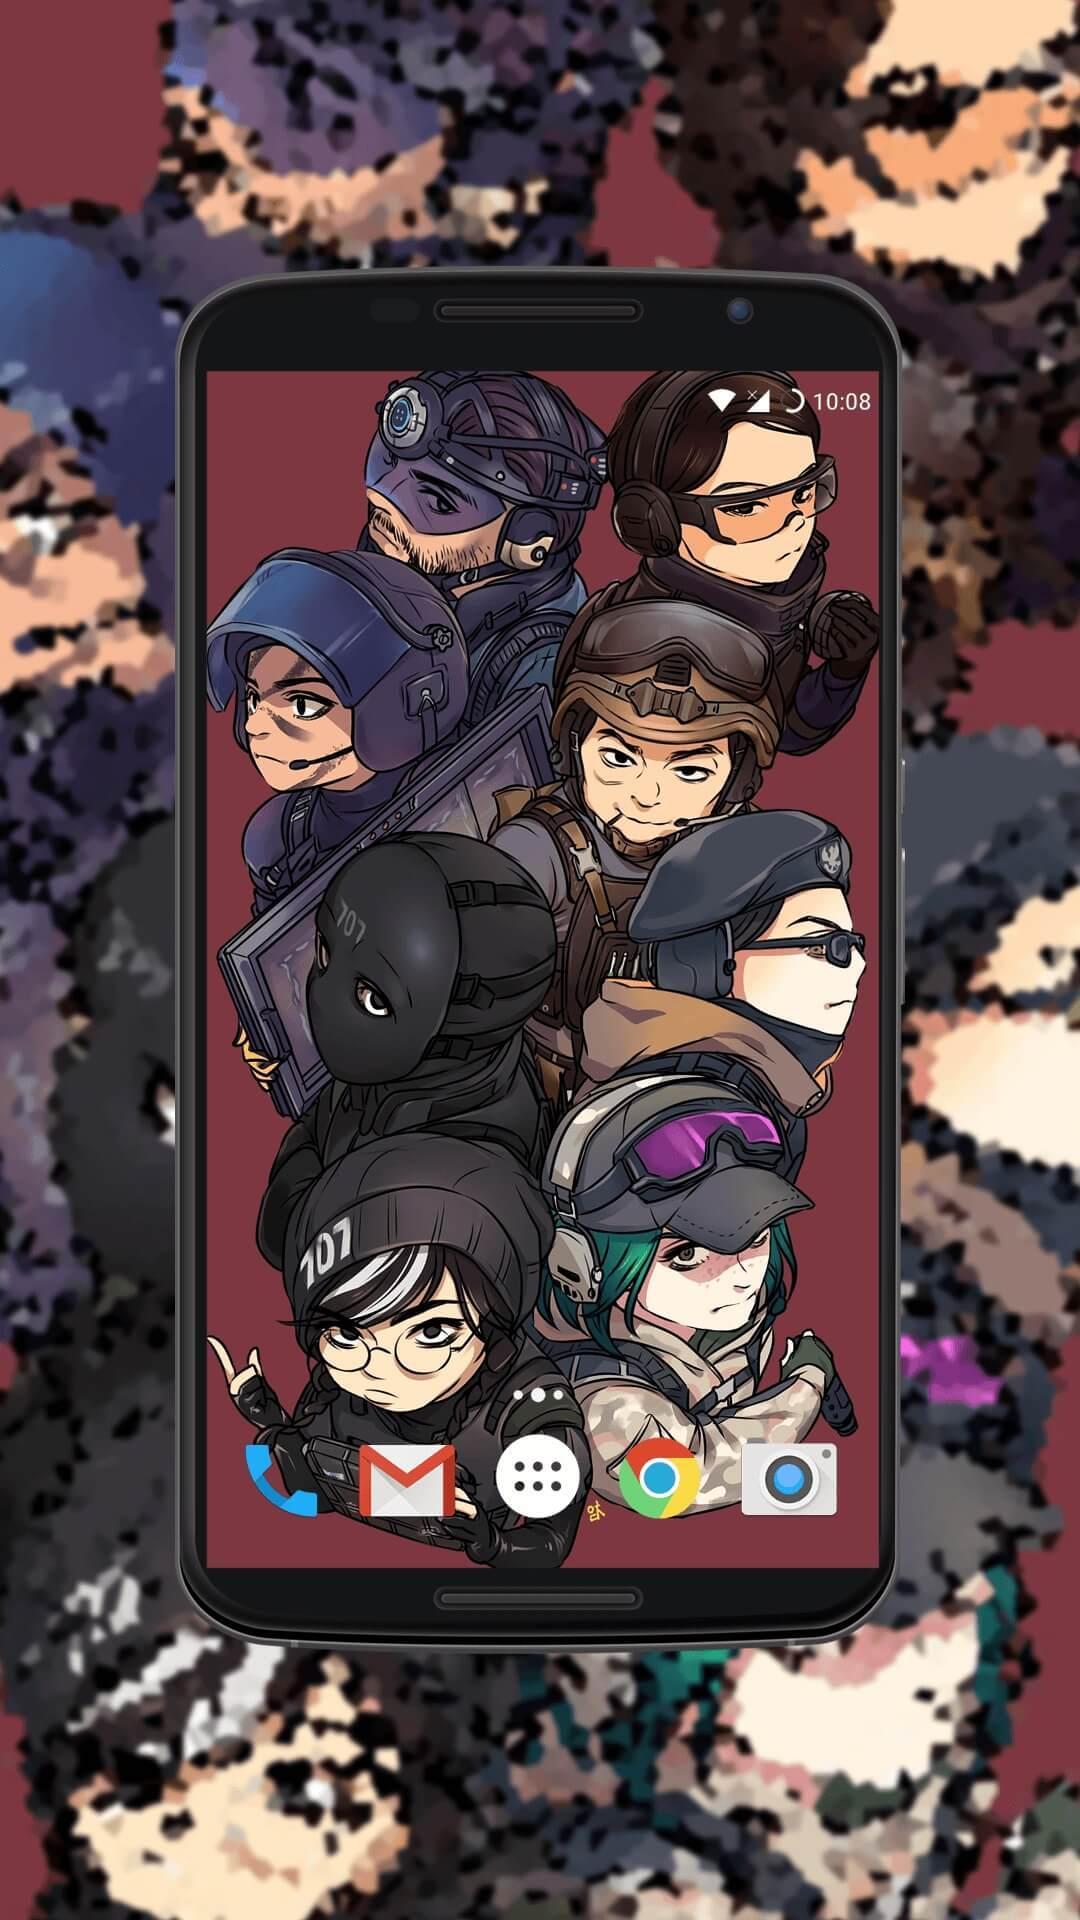 Android 用の Rainbow Six Siege Wallpaper Apk をダウンロード